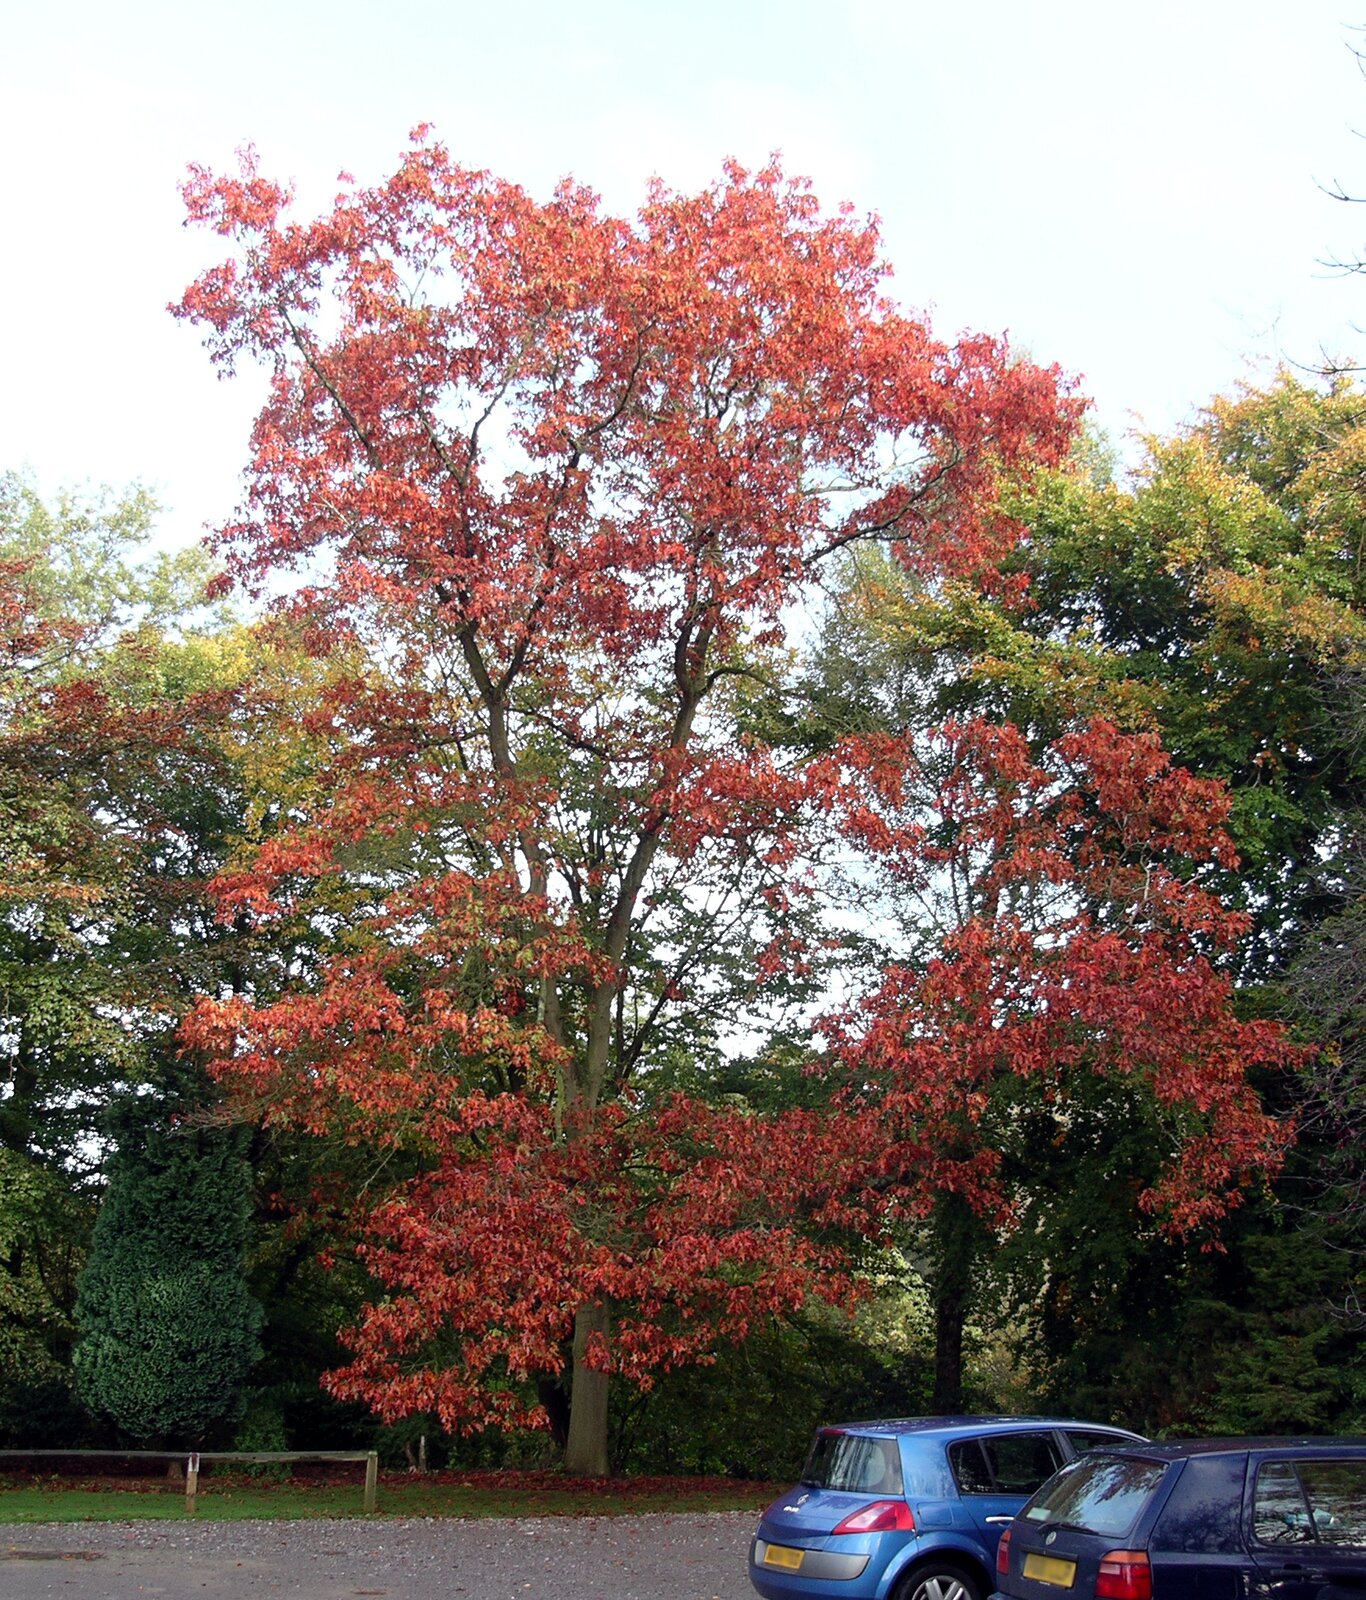 Fotografia przedstawia wysokie, rozłożyste drzewo z czerwonymi liśćmi, rosnące przy ulicy. To dąb czerwony.